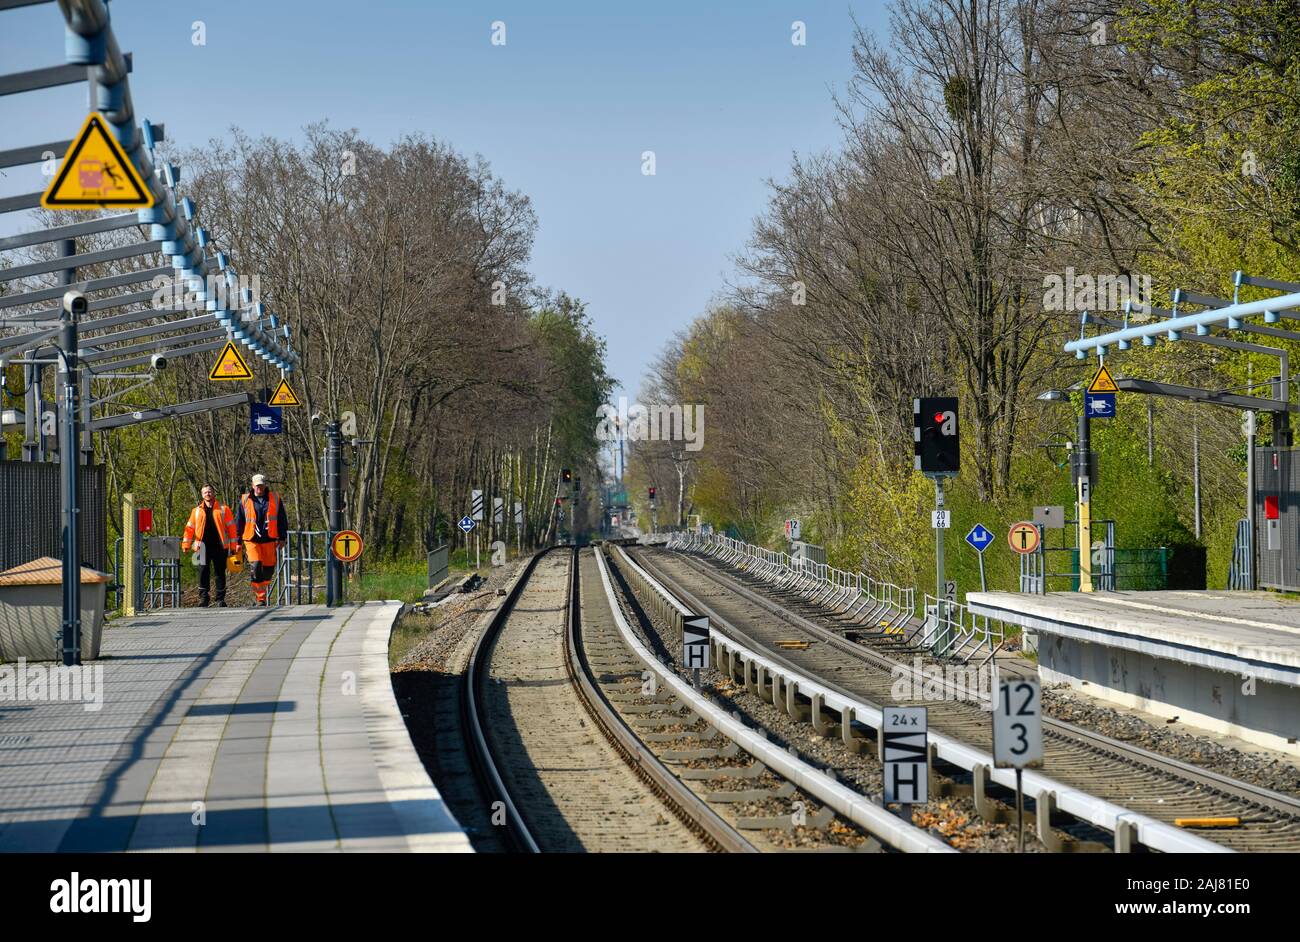 S-Bahnstrecke, Dresdner Bahn, Schichaustraße, Lichtenrade, Tempelhof-Schöneberg, Berlin, Deutschland Stock Photo